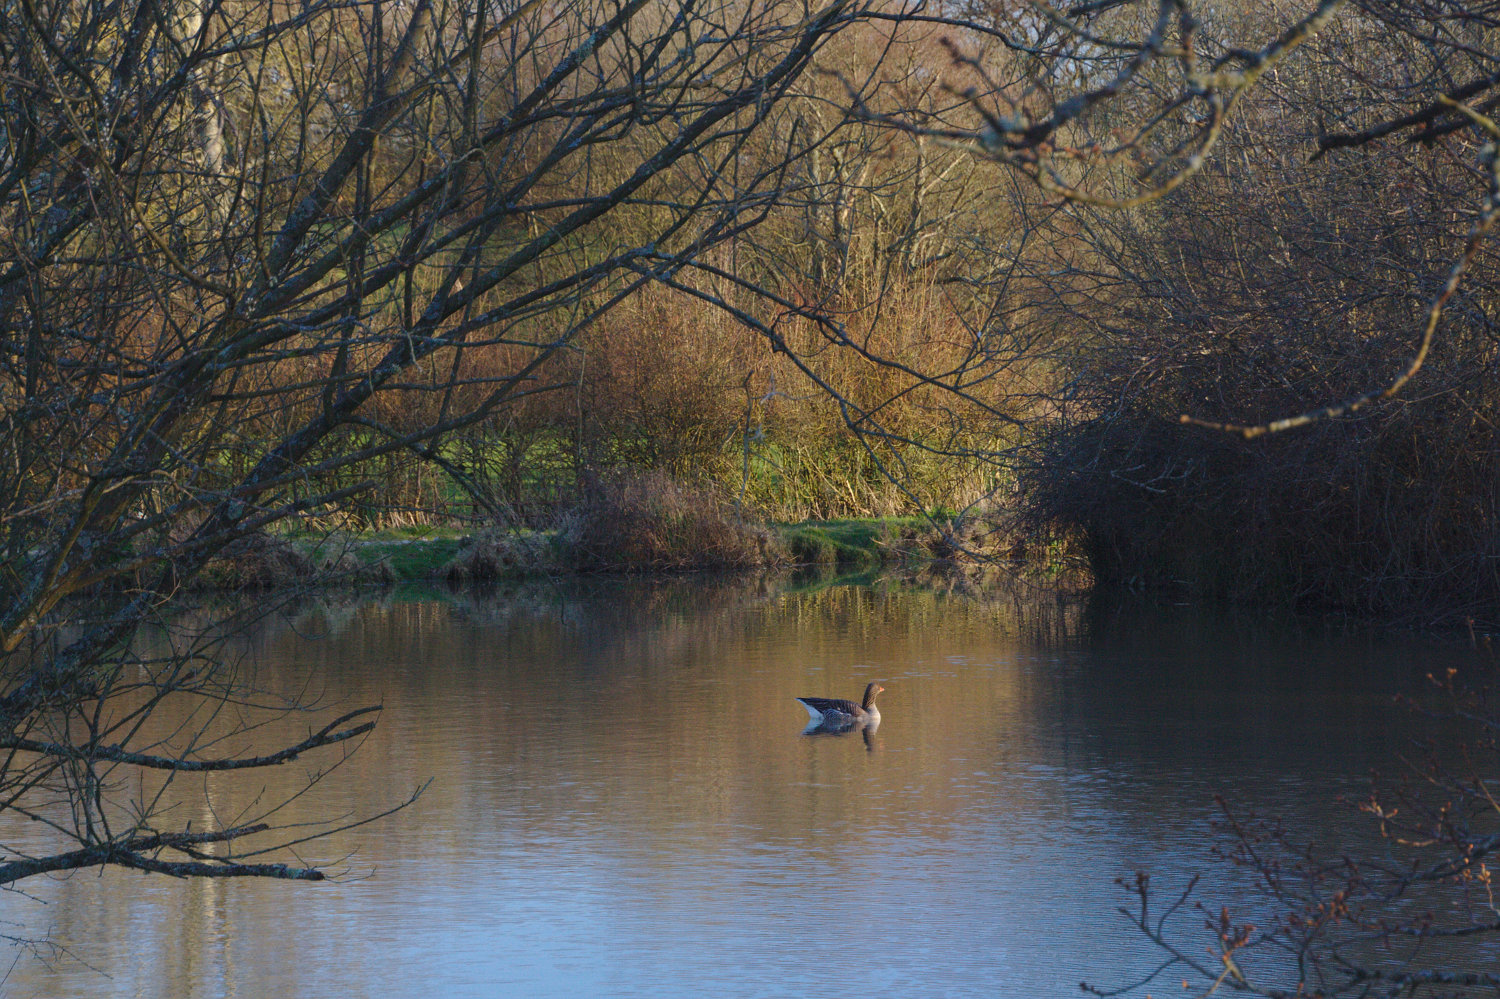 Goose on the fishing lake